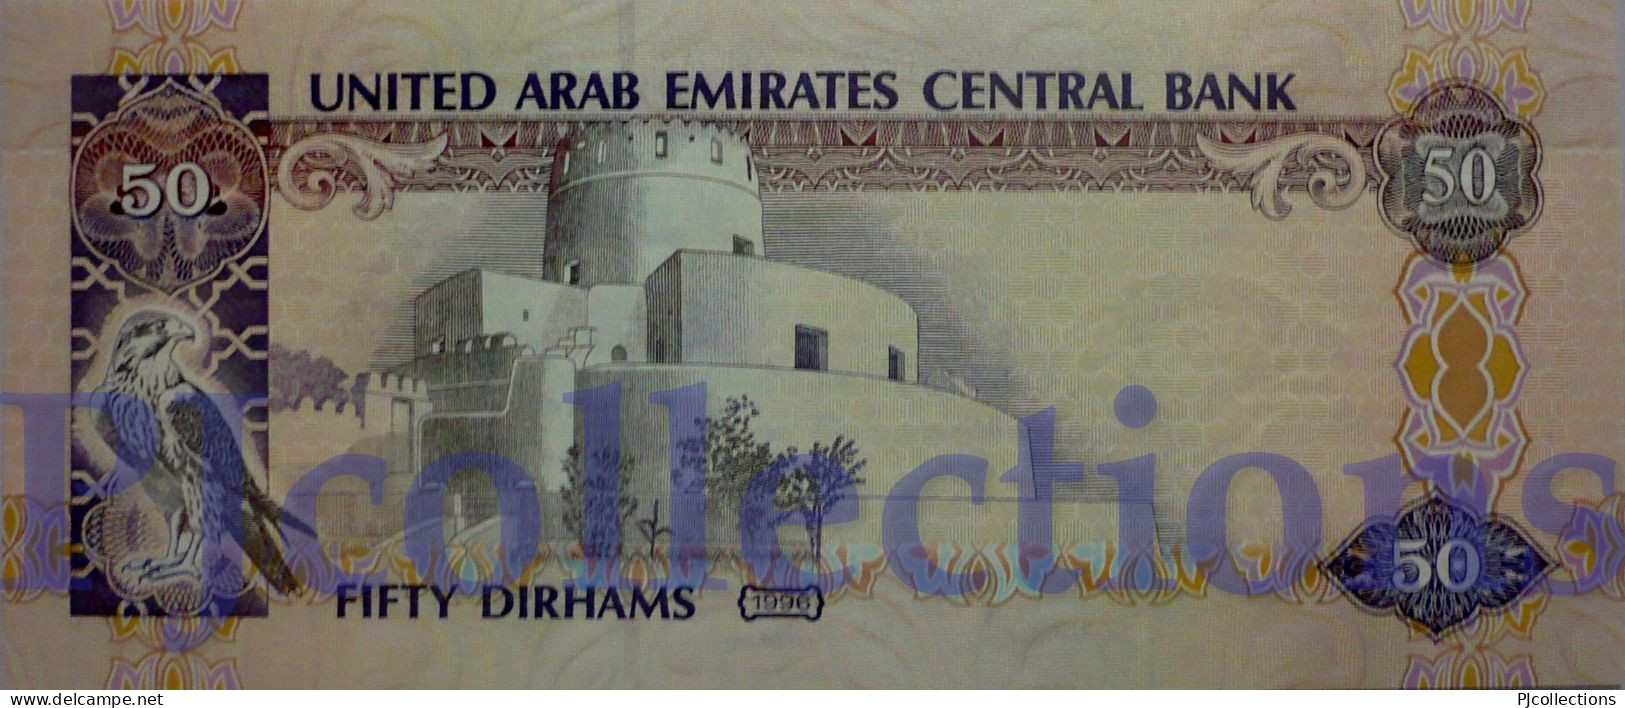 UNITED ARAB EMIRATES 50 DIRHAMS 1996 PICK 14b UNC - Ver. Arab. Emirate